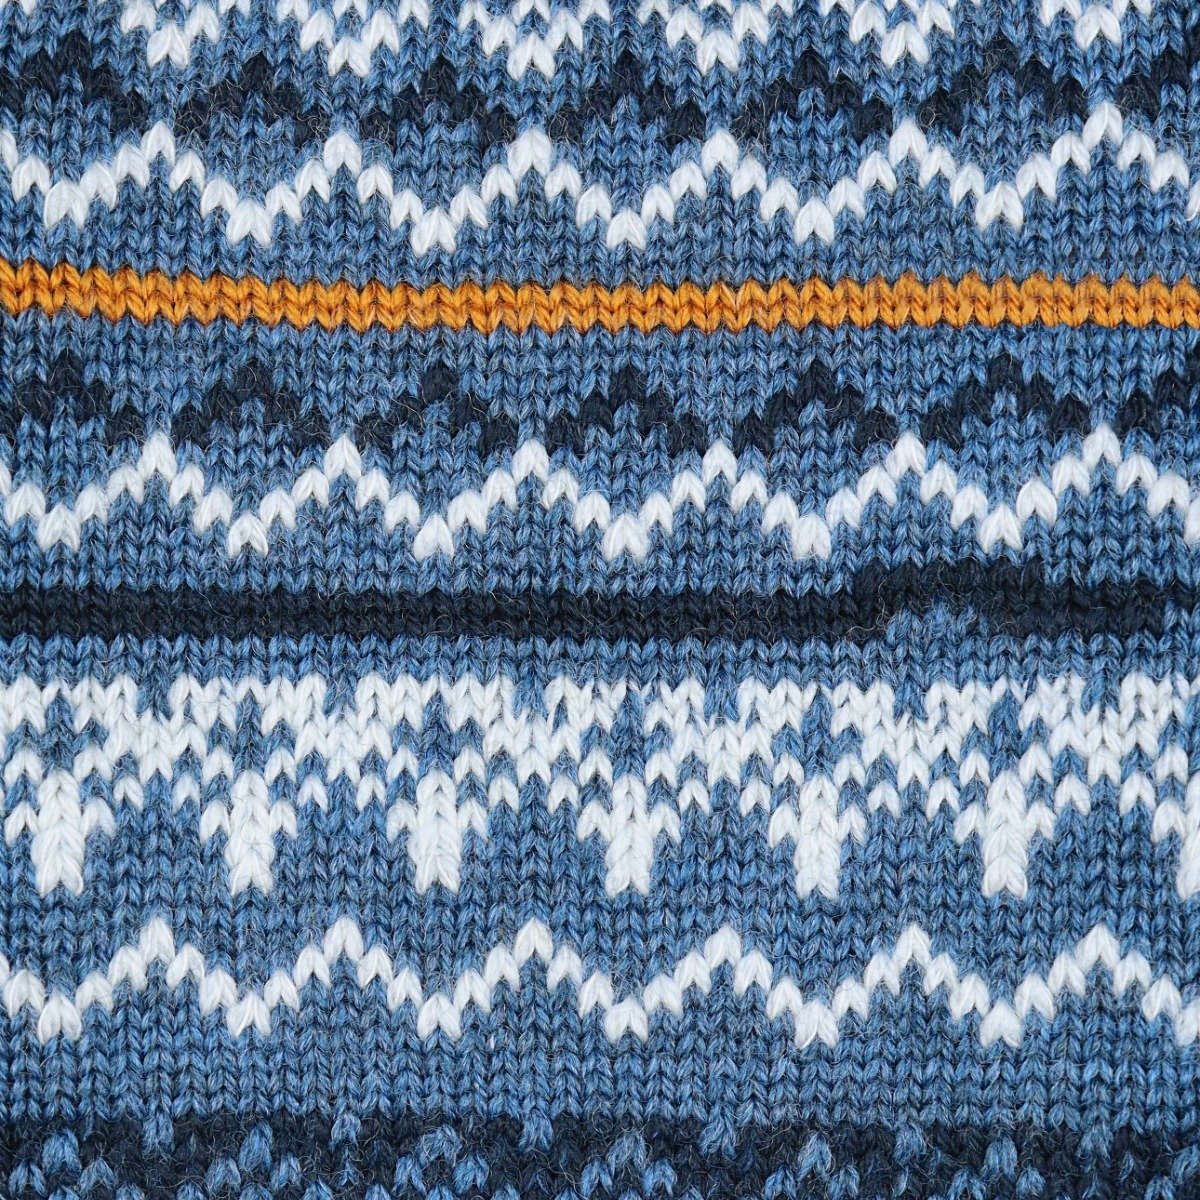 Corgi blue Fair Isle merino wool socks